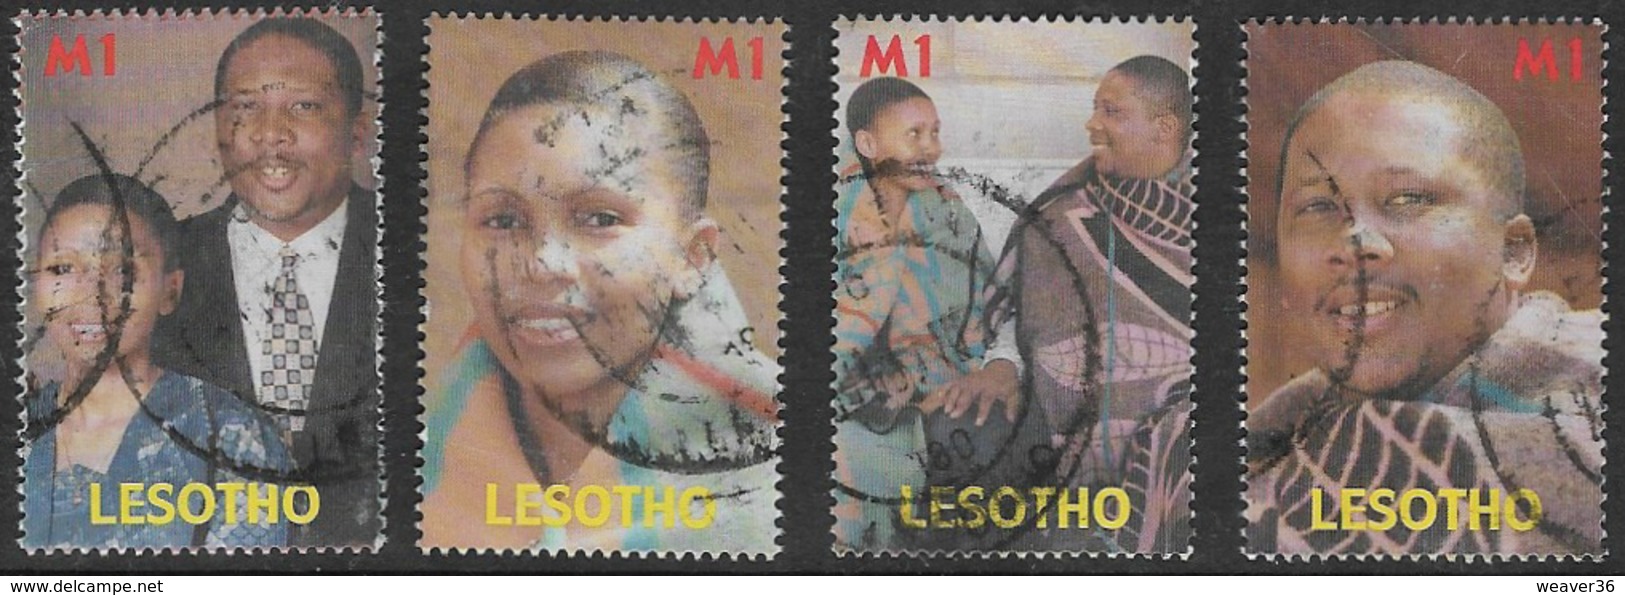 Lesotho SG1691-1694 2000 Royal Wedding Set 4v Complete Good/fine Used [37/30947/1D] - Lesotho (1966-...)